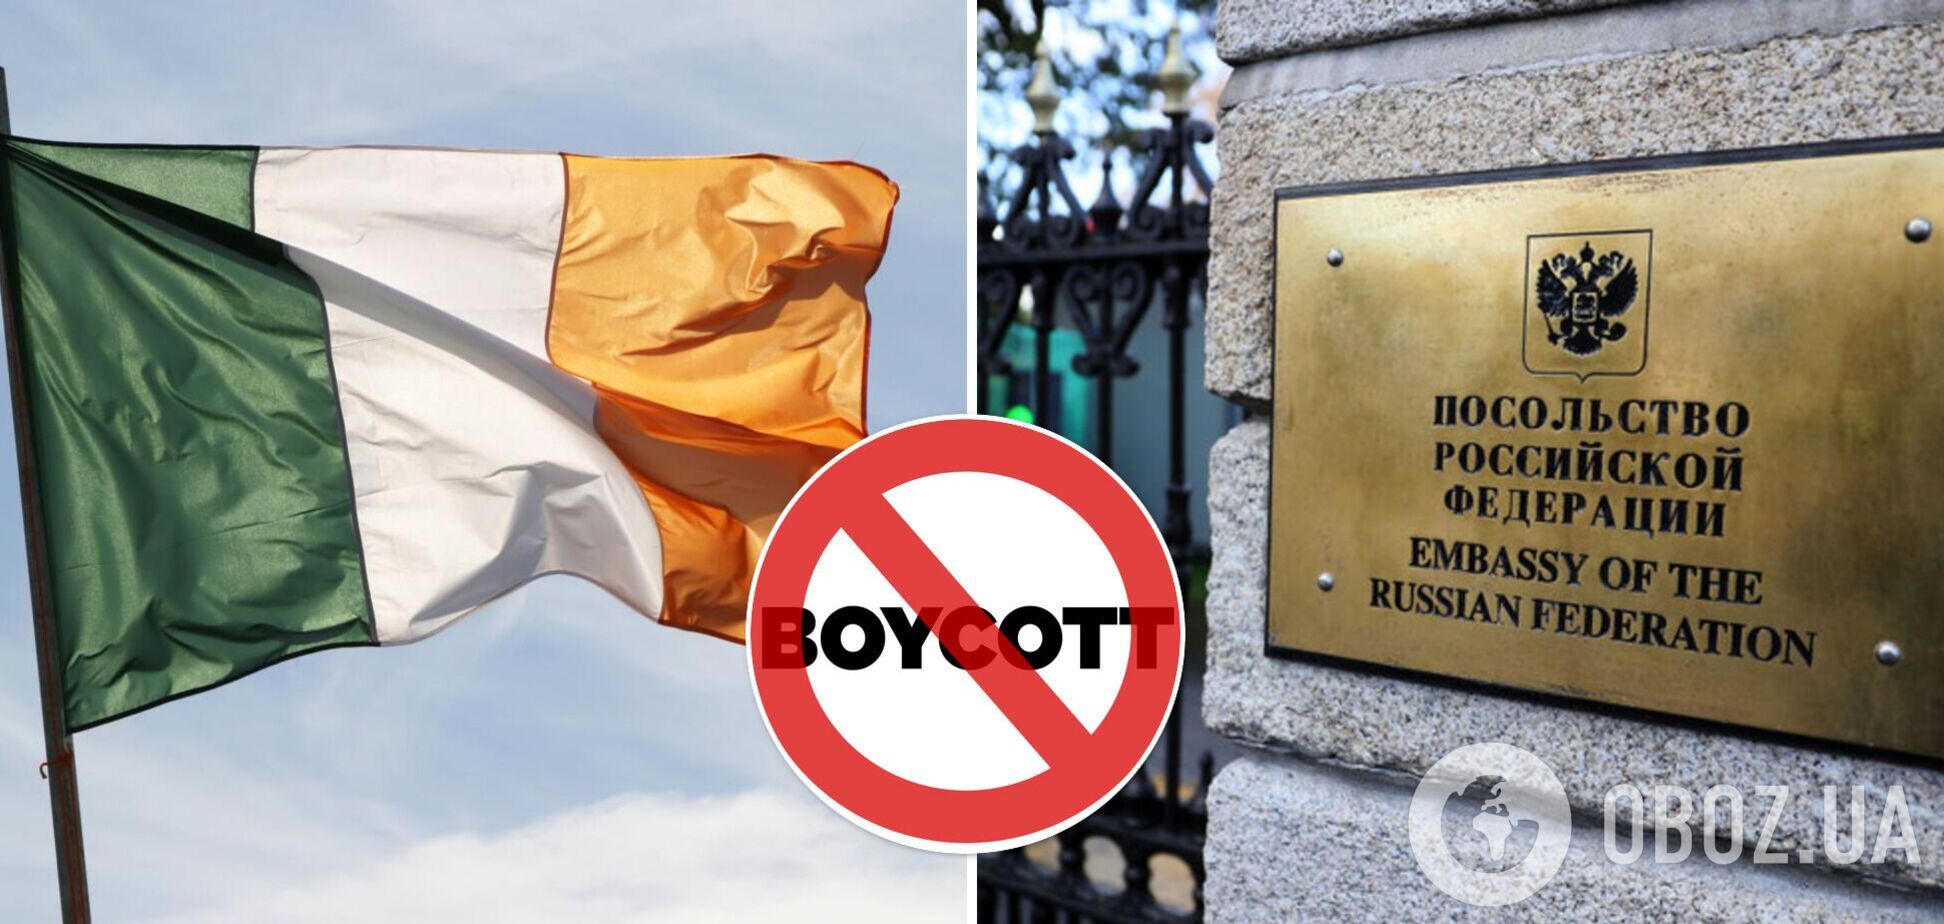 Ирландцы бойкотируют российское посольство